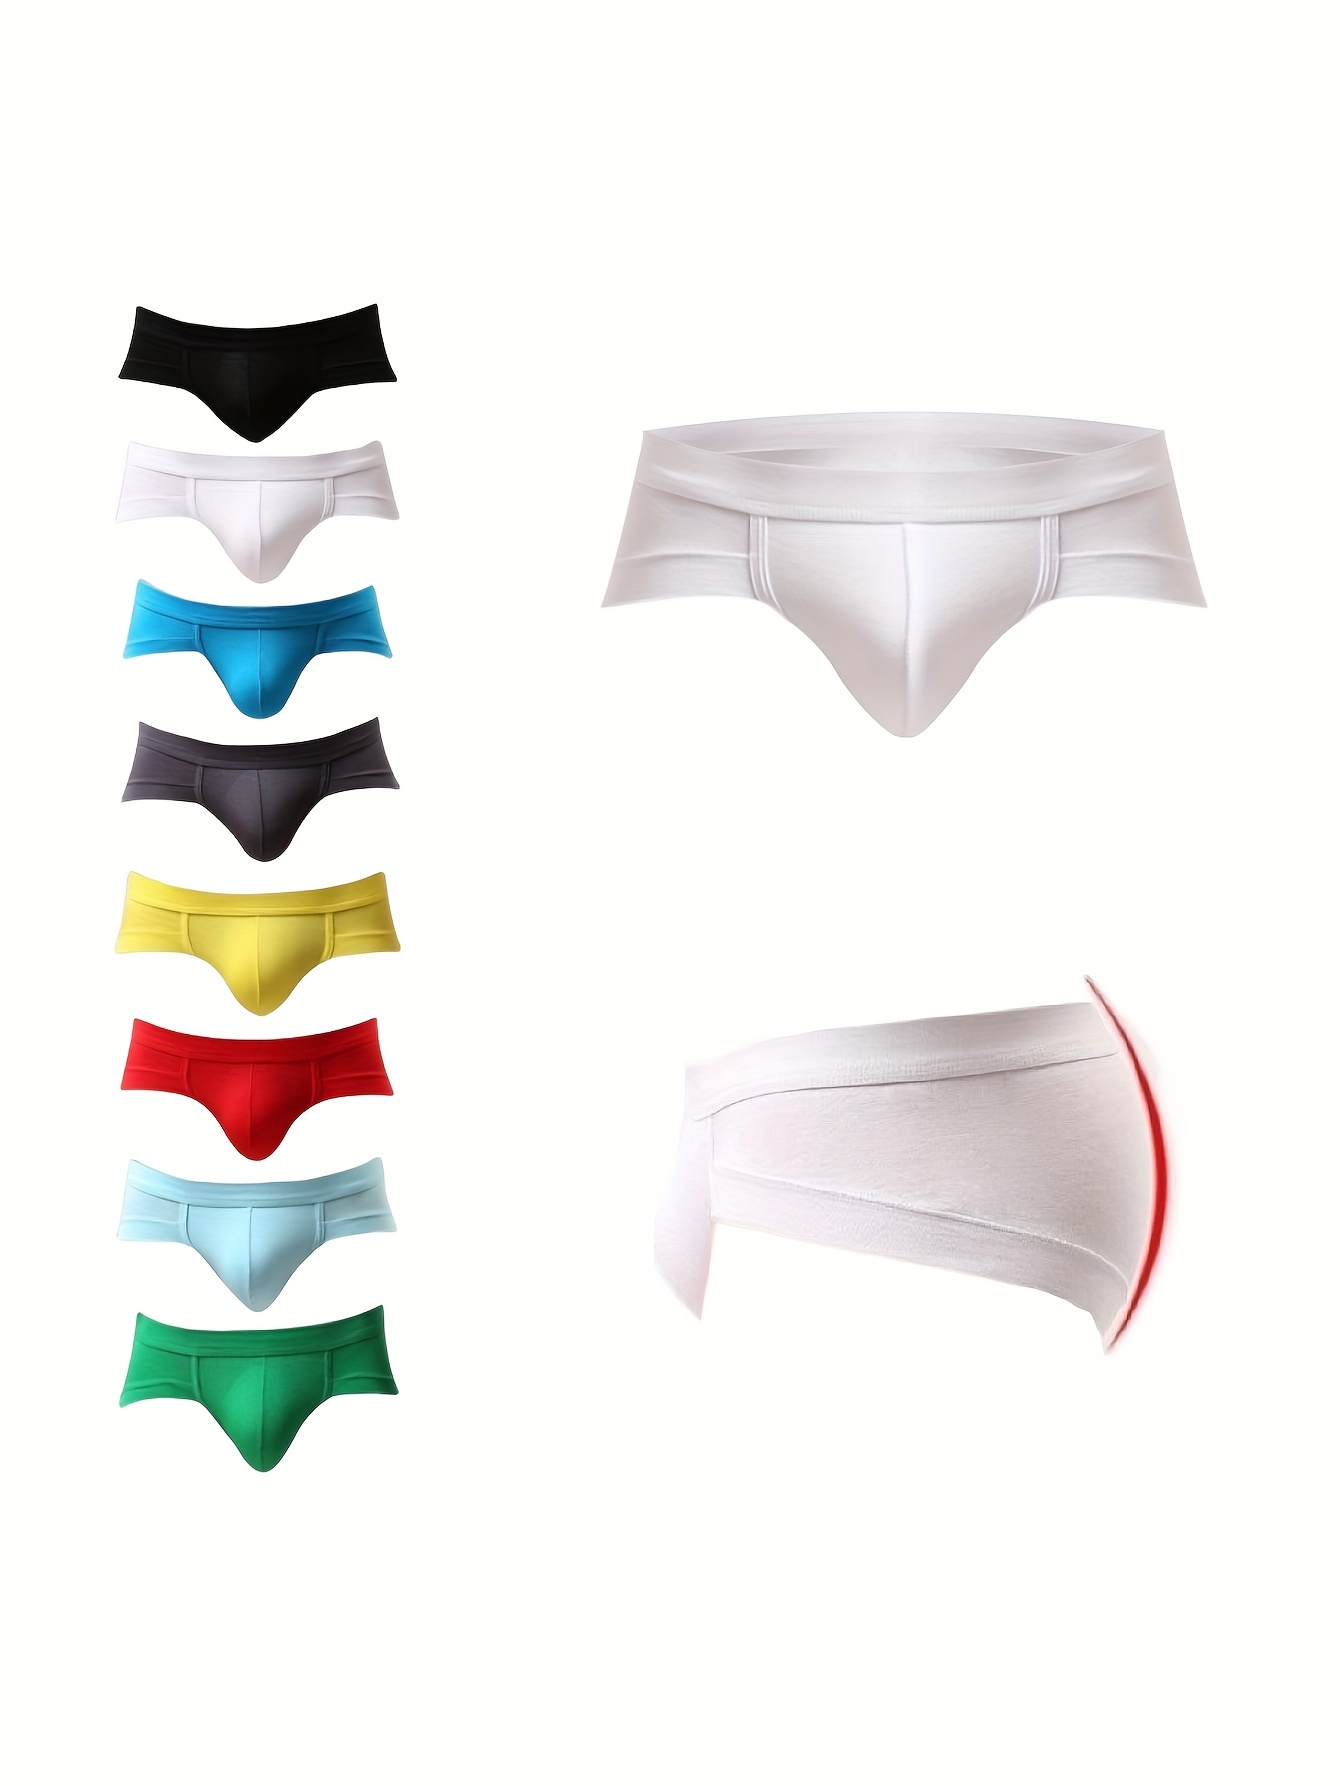 New Modal Mens Underware Sexy Men's Briefs Slip U Convex Pouch Breathable  Man Underpants Bikini Soft Lingerie 3 Colors Panties